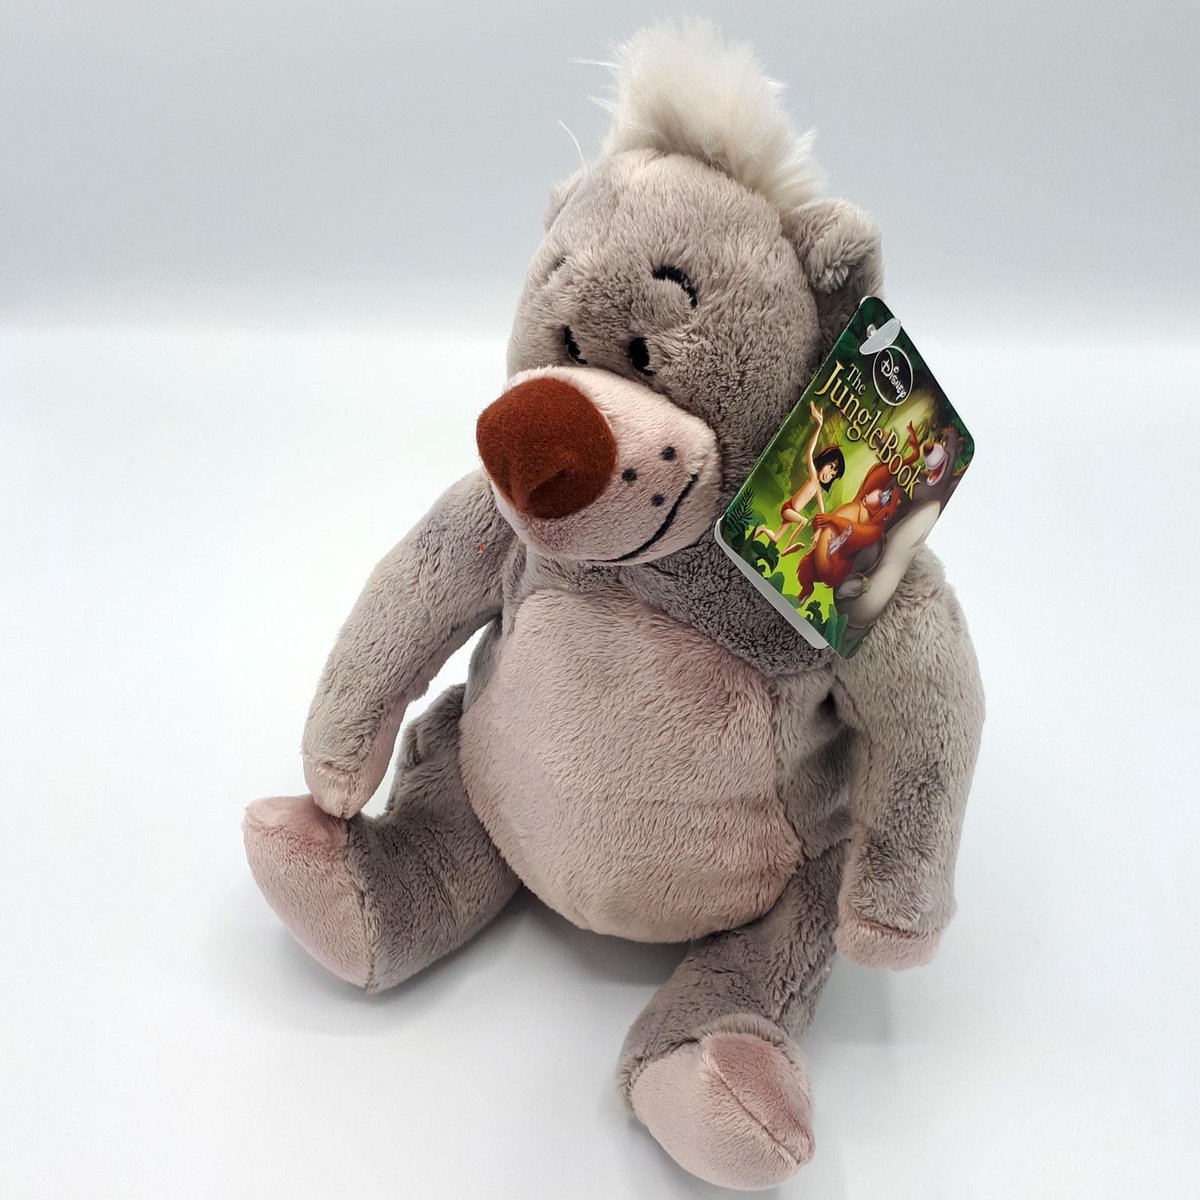 Le Livre de la Jungle - Peluche Ours Baloo - 16cm - Qualité Super Soft